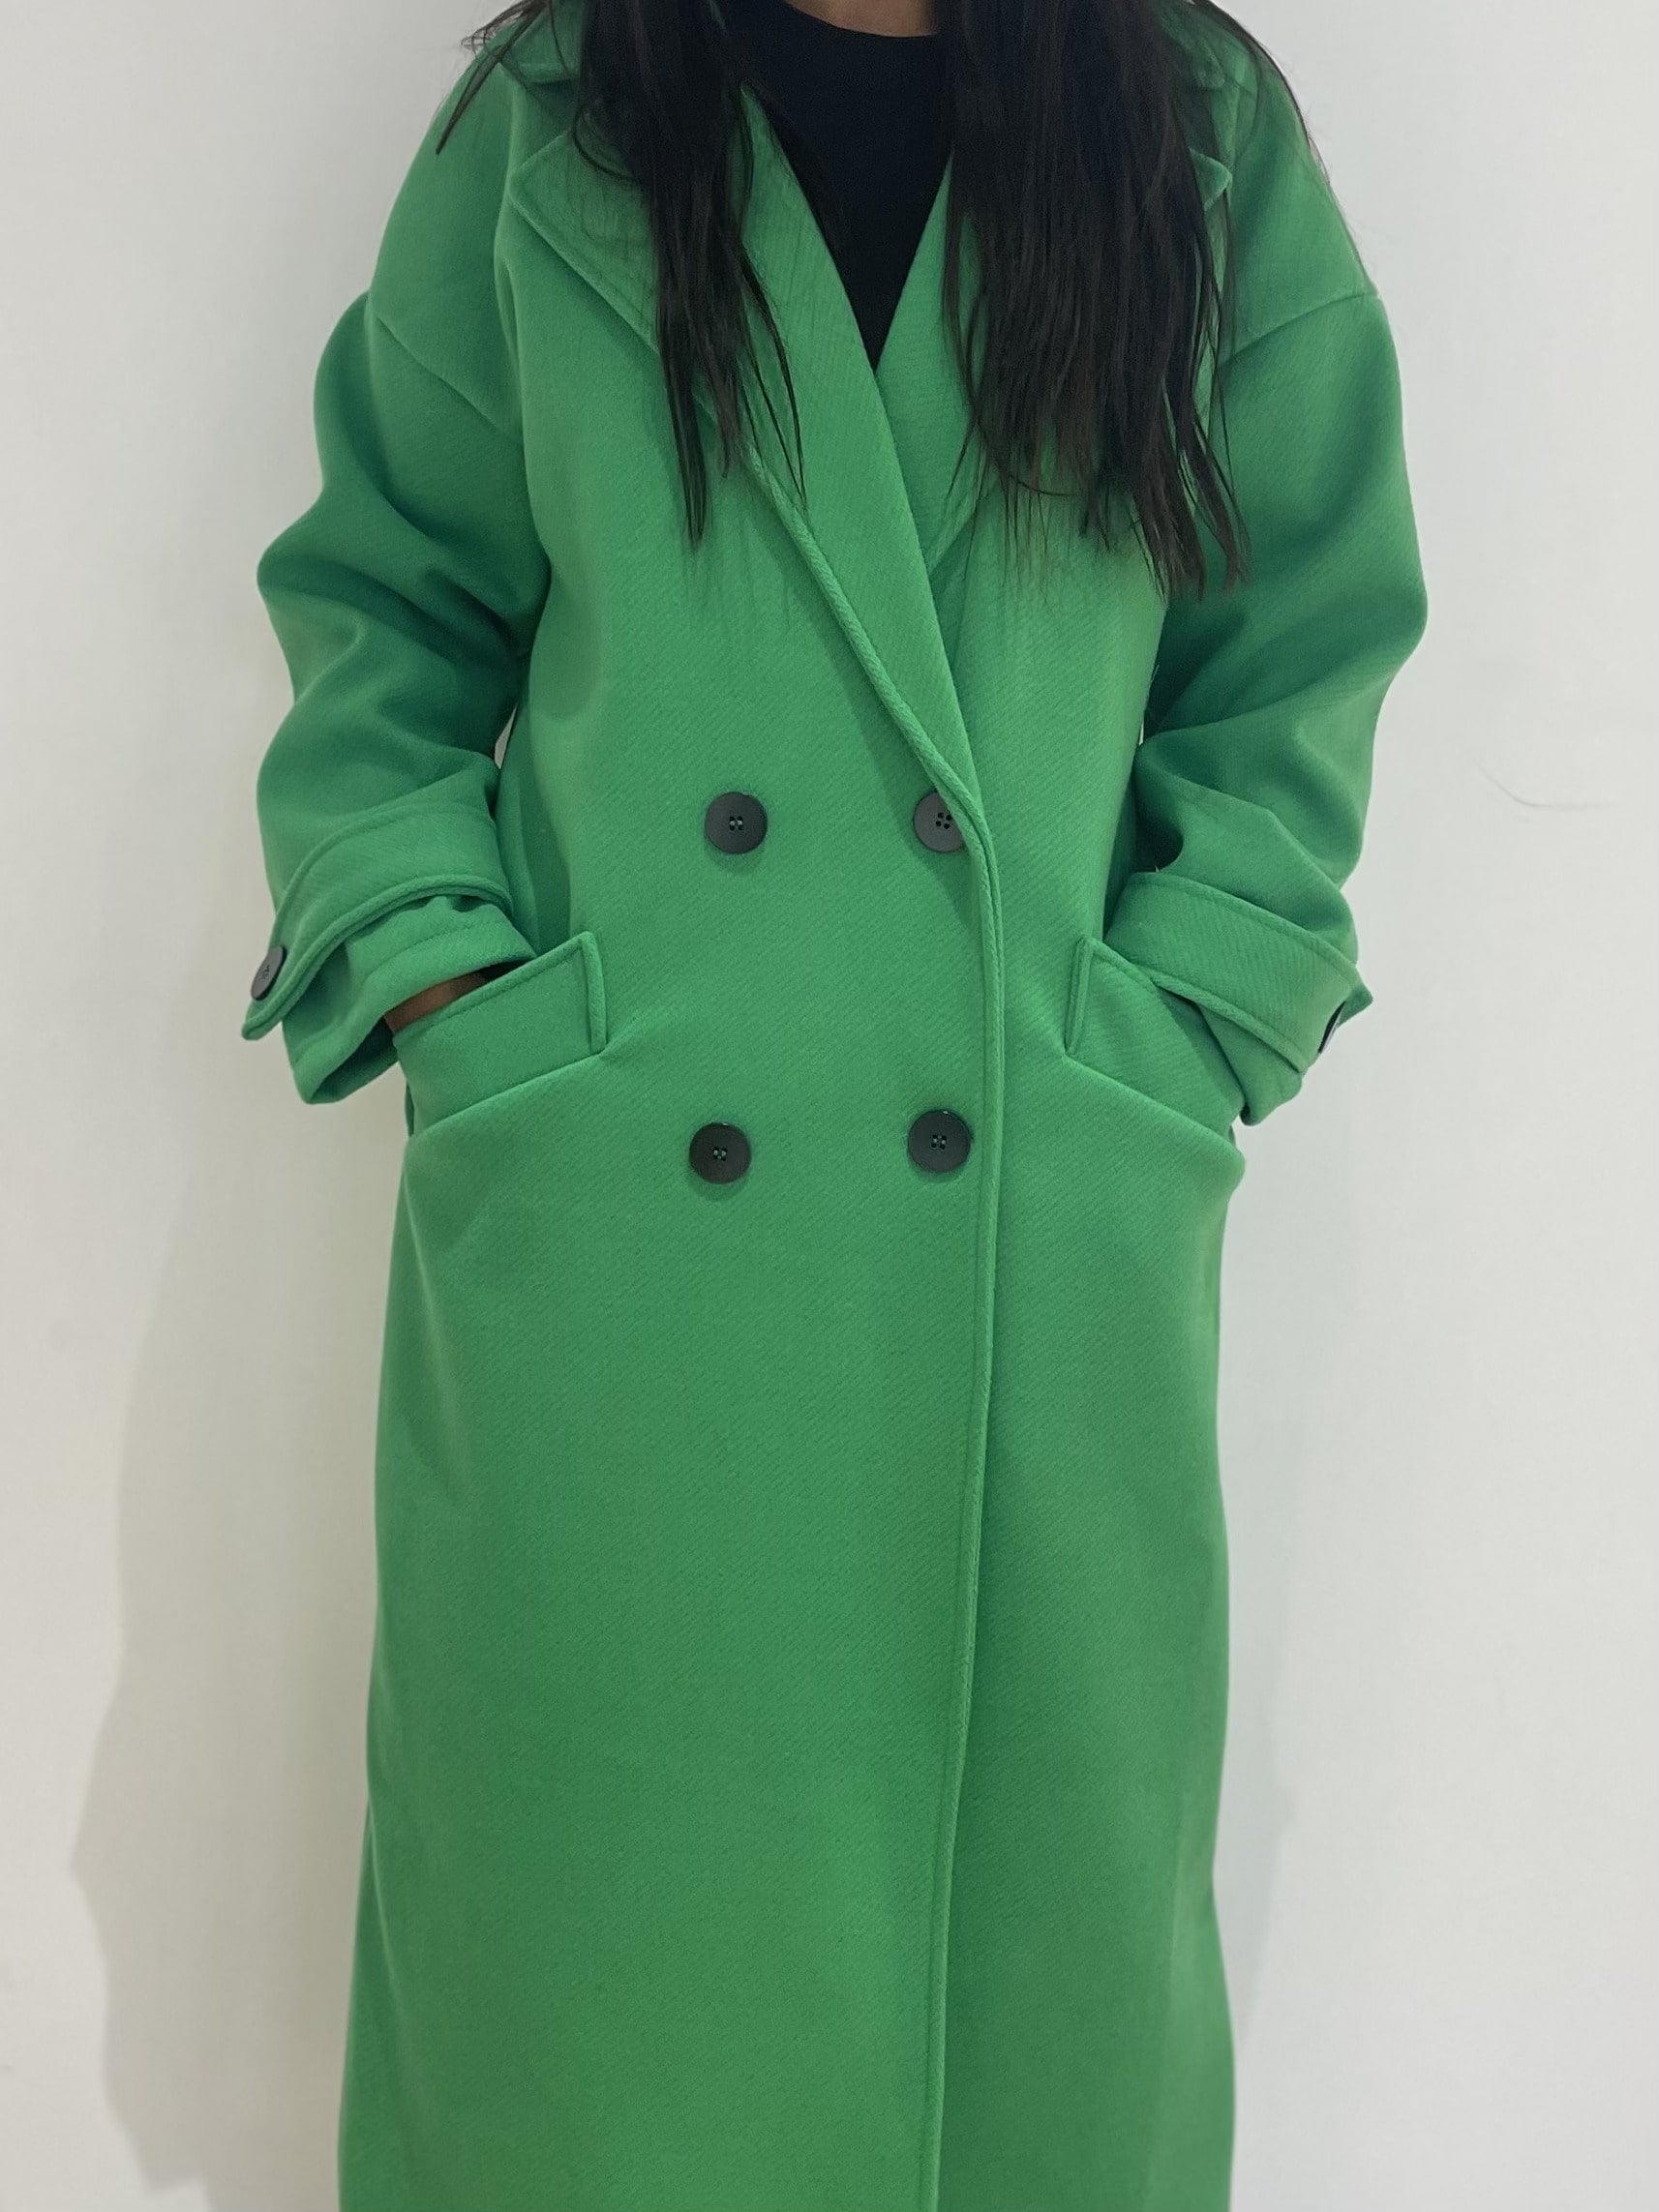 Manteau en laine vert sapin, ample et confortable pour l'hiver